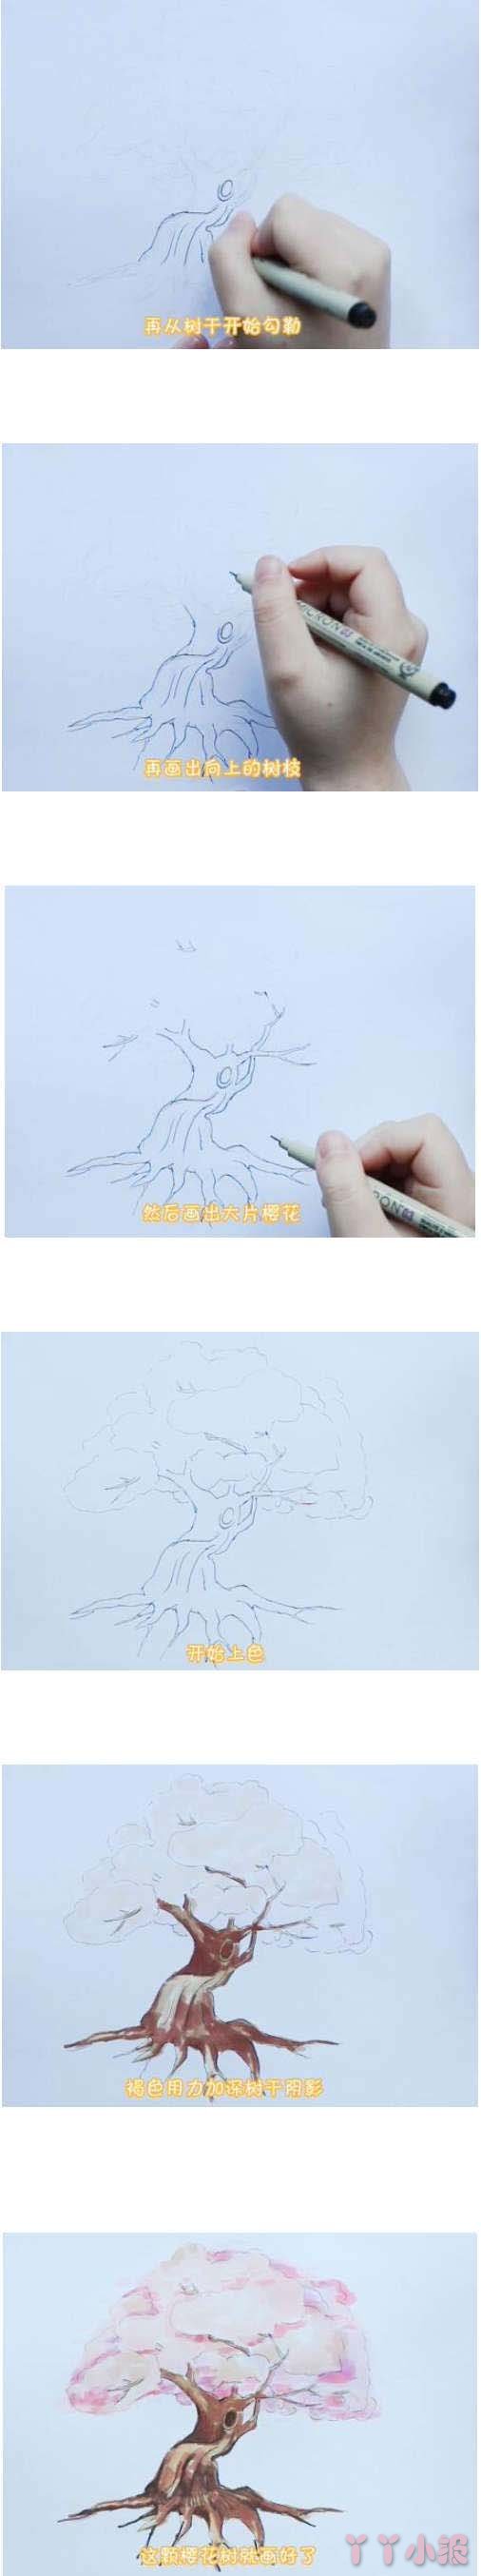 教你一步一步手绘樱花树简笔画涂色简单漂亮